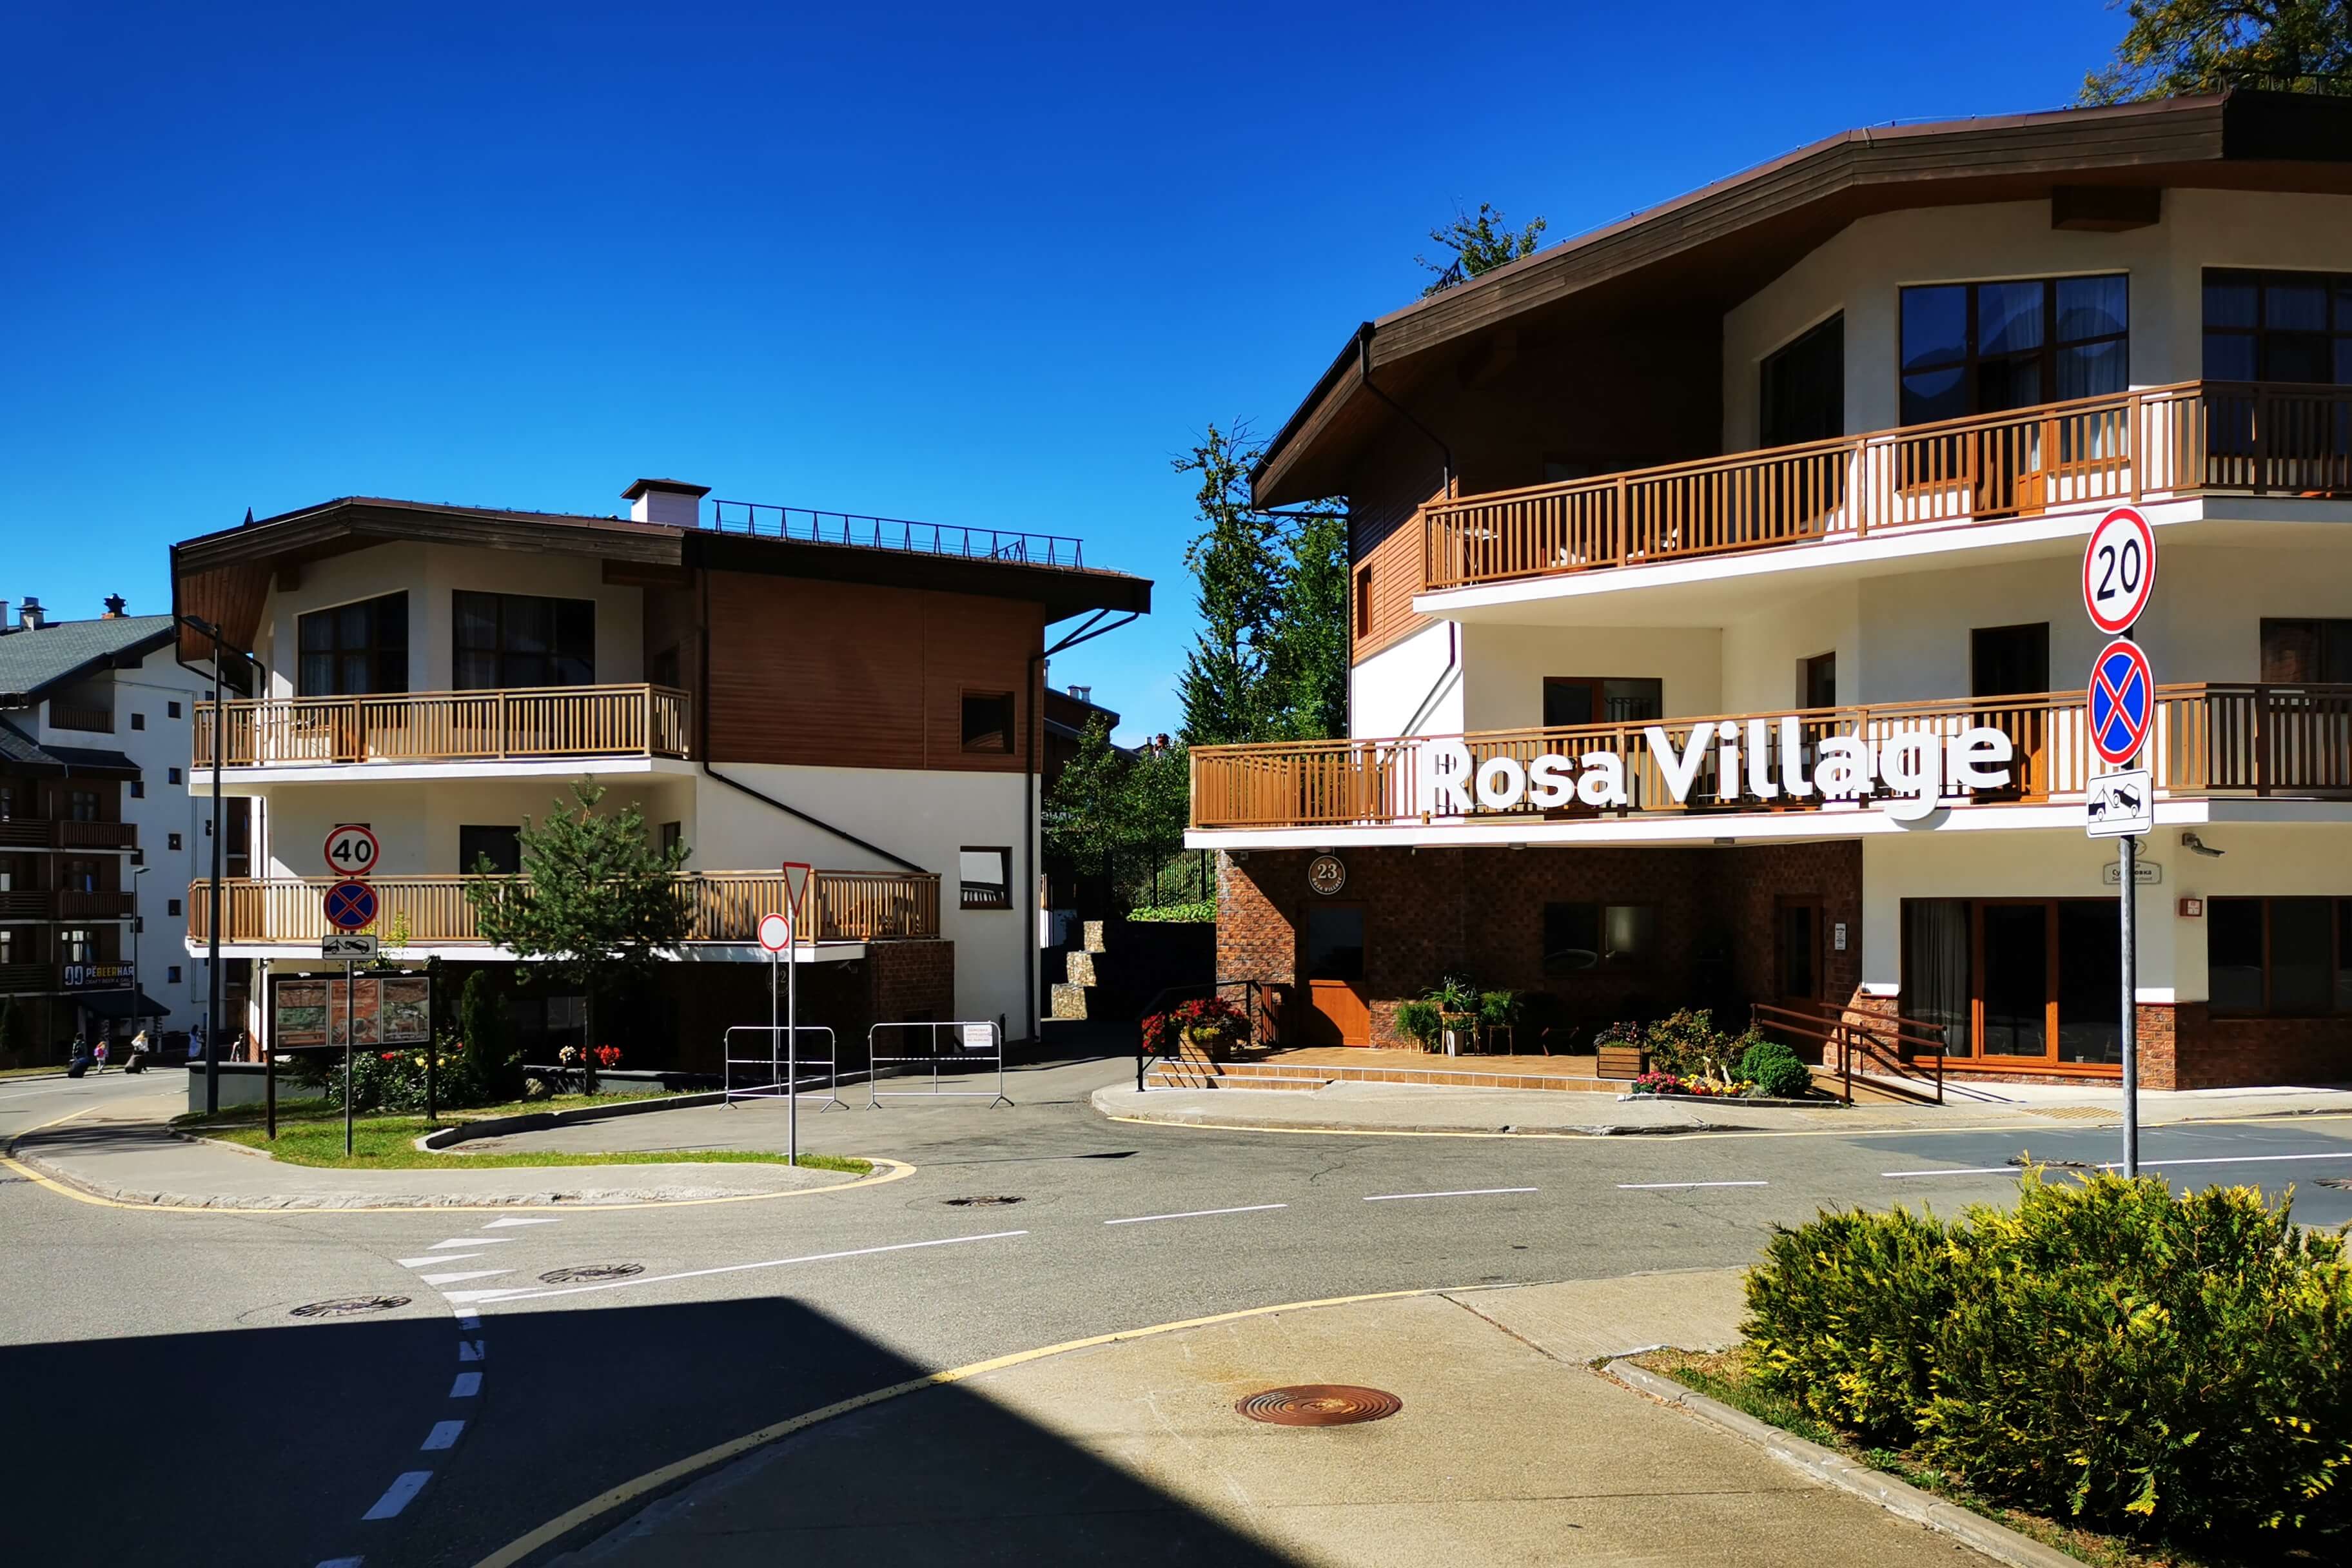 Rosa Village